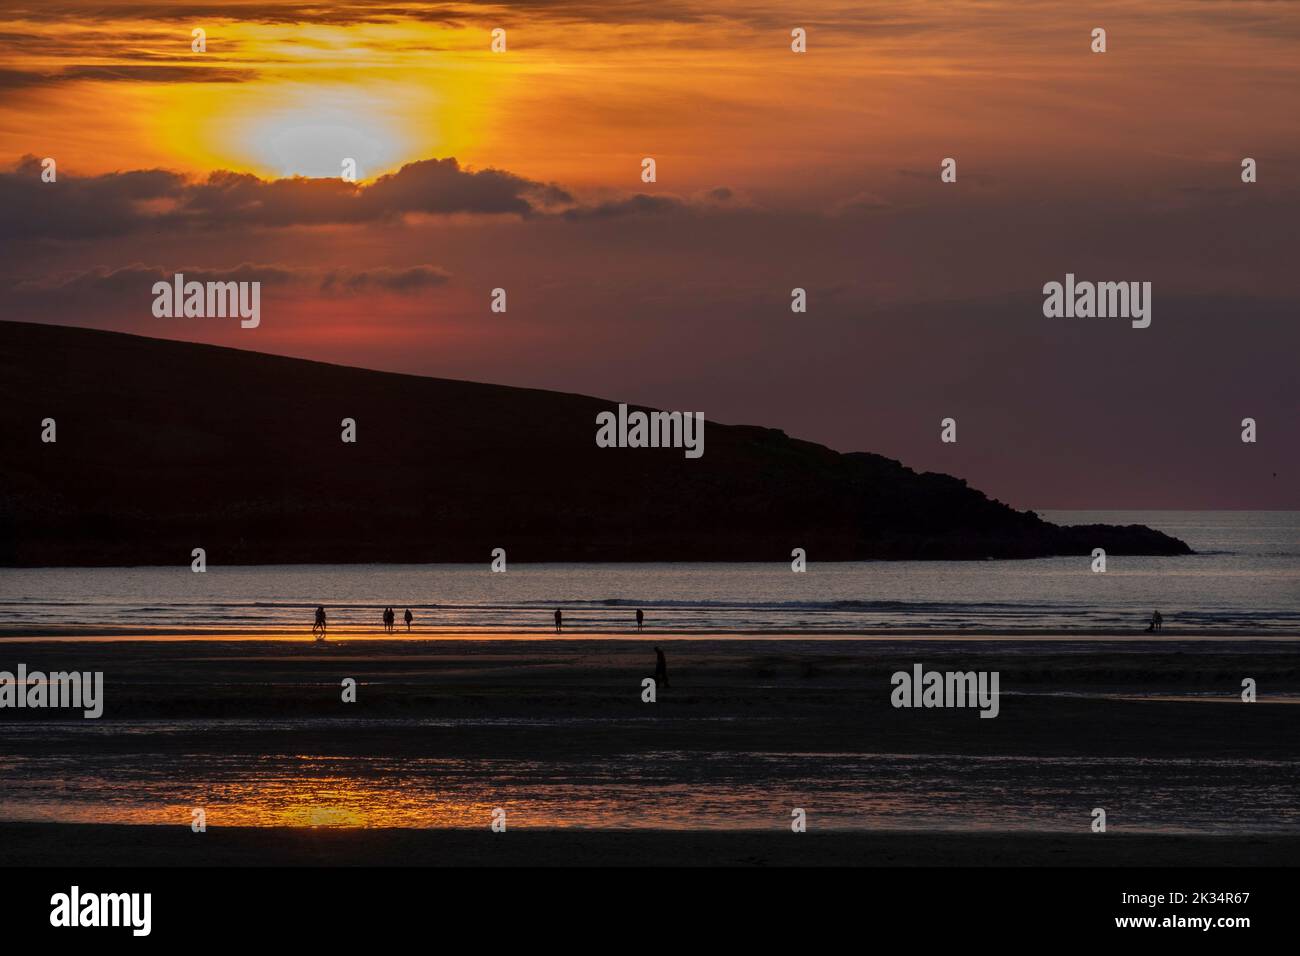 Coucher de soleil sur la plage de Crantock dans le nord de Cornwall, vue sur l'océan Atlantique. Banque D'Images